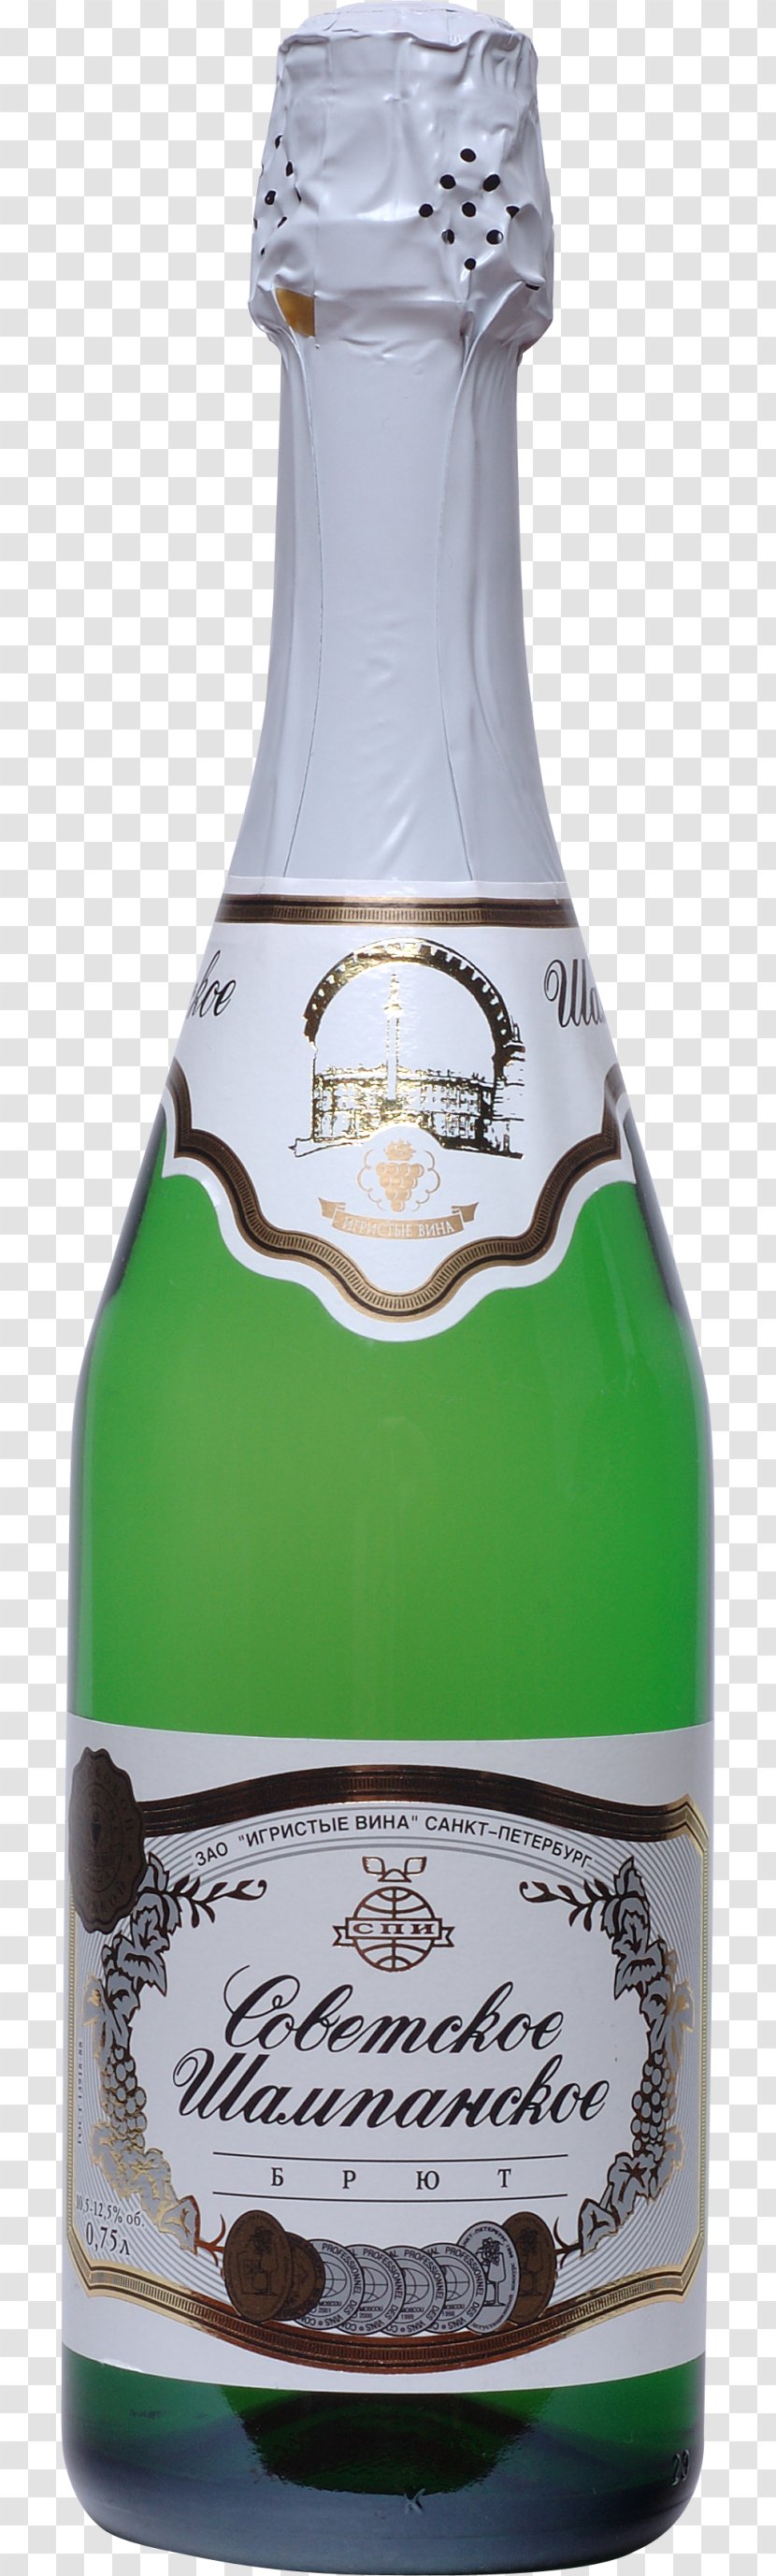 Champagne Liqueur Bottle Clip Art - Cocktail Transparent PNG